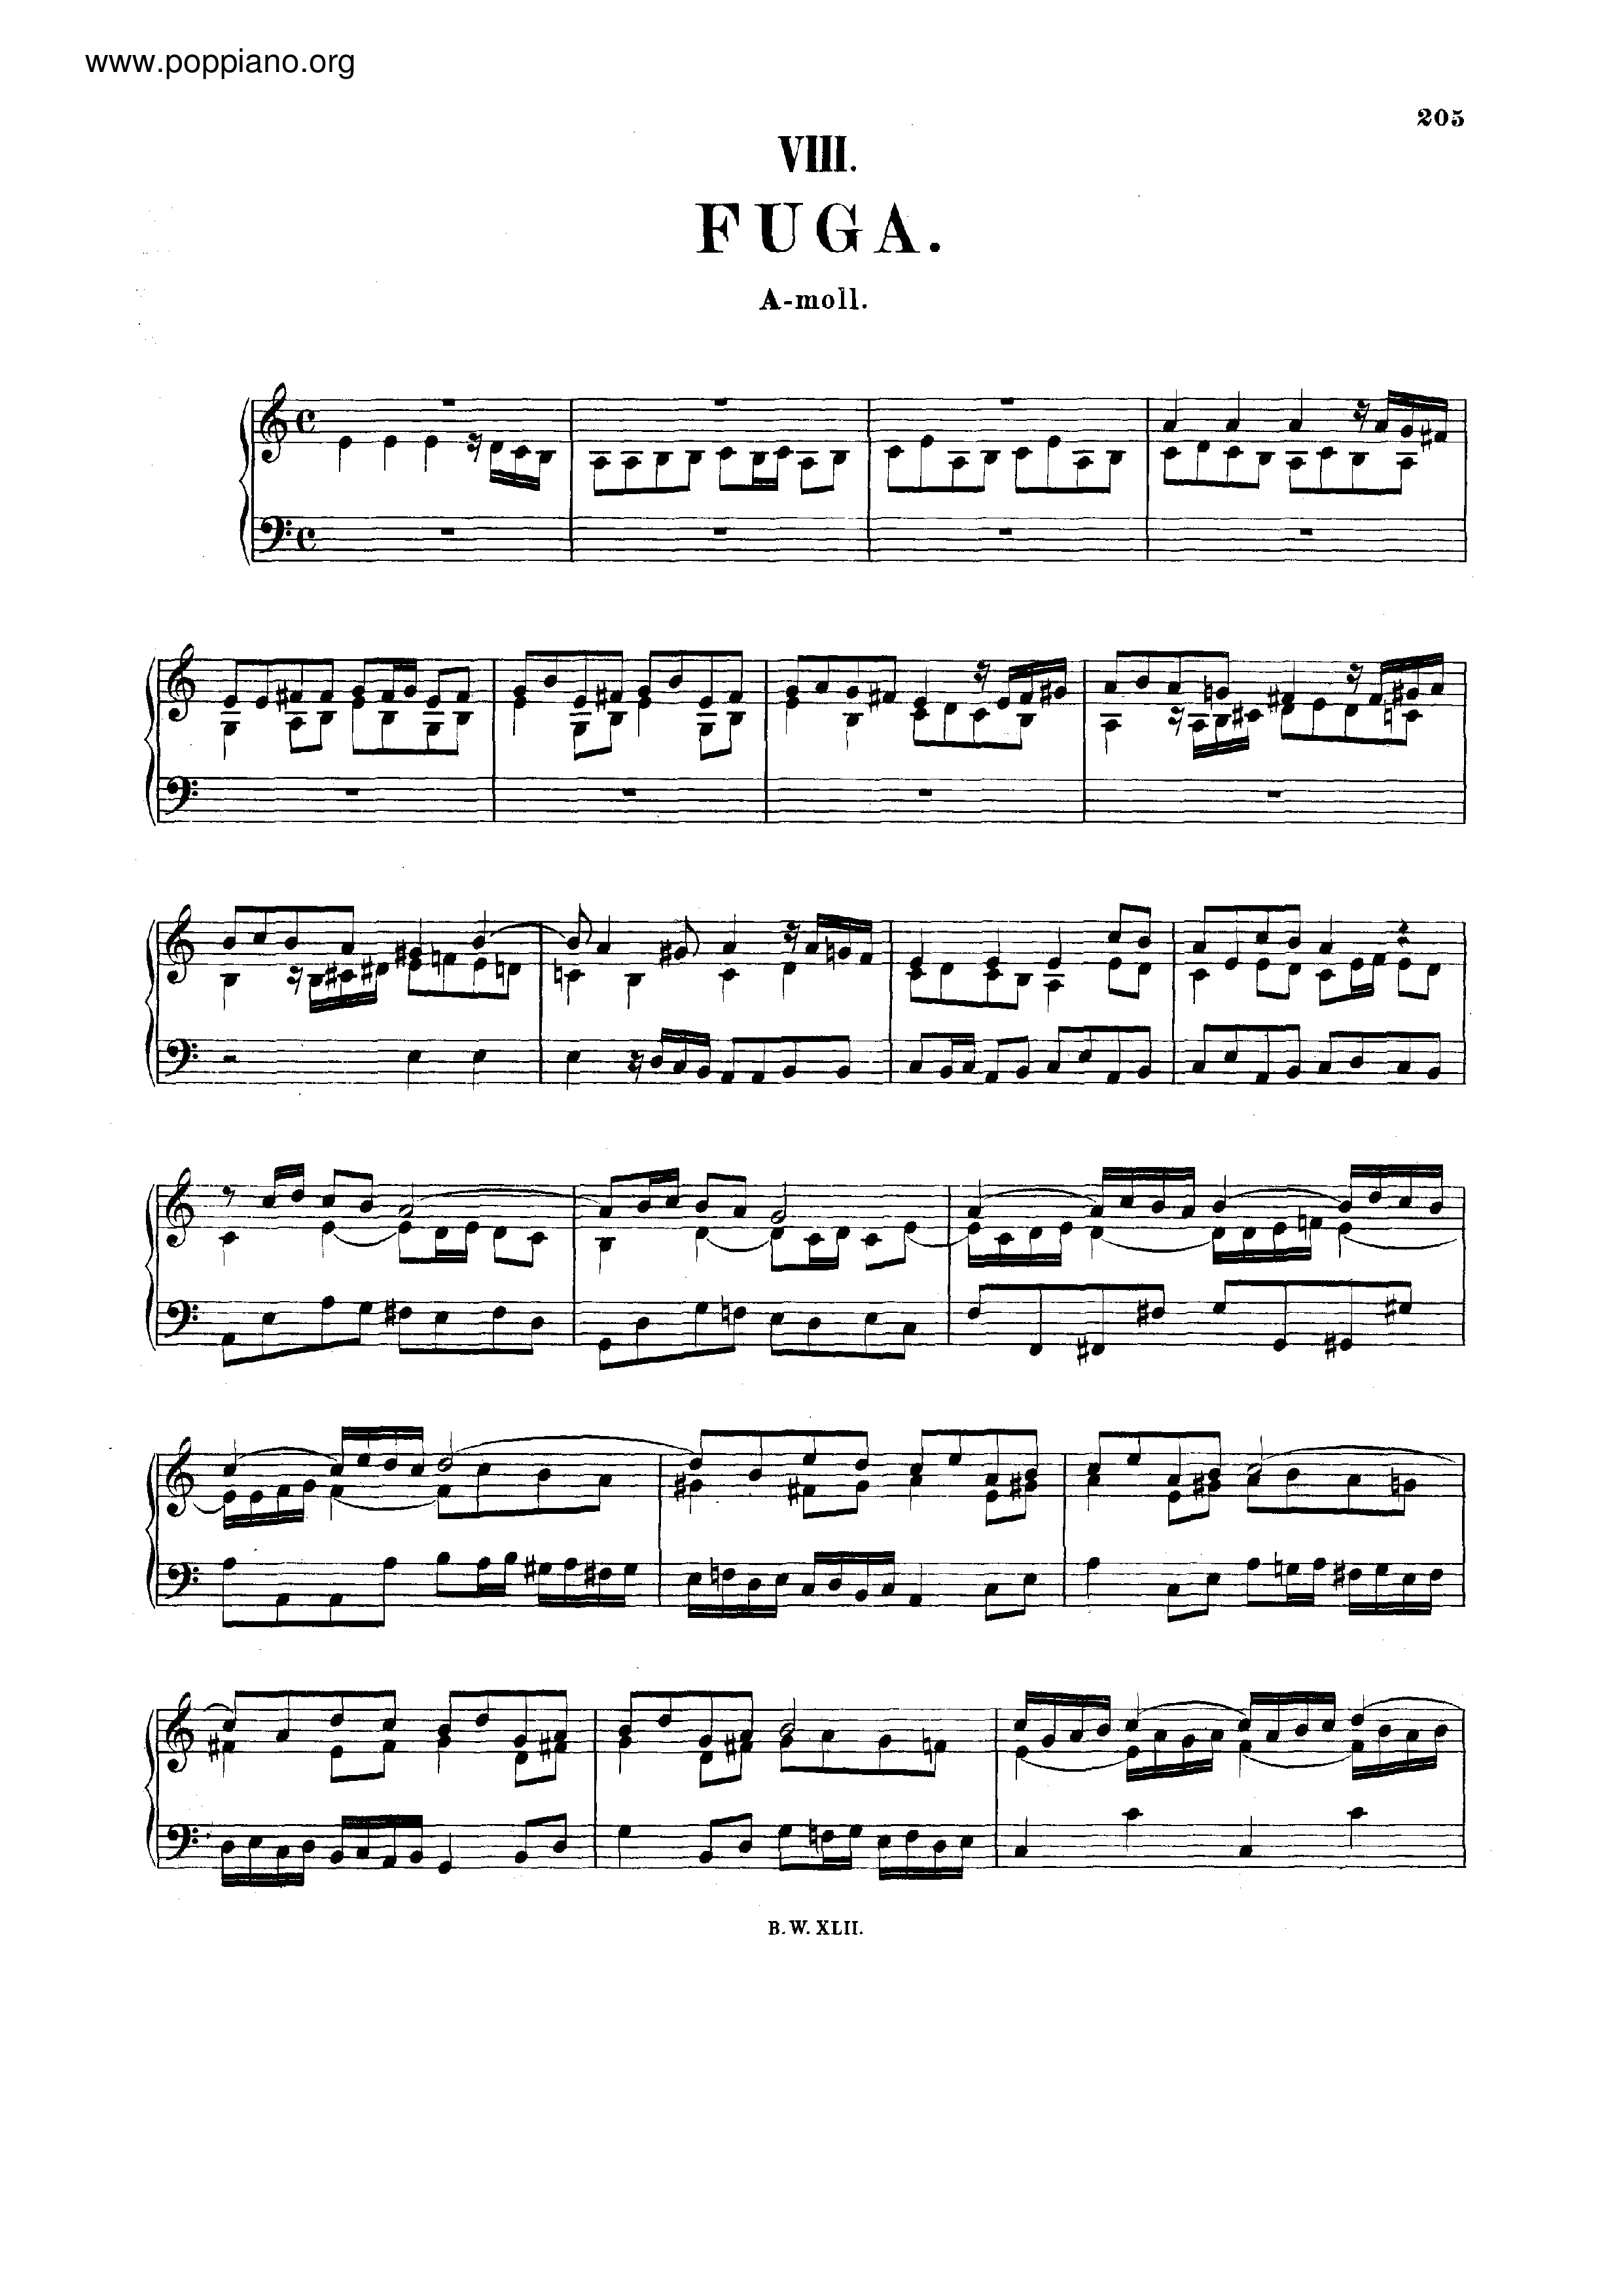 Fugue in A minor, BWV 958 Score